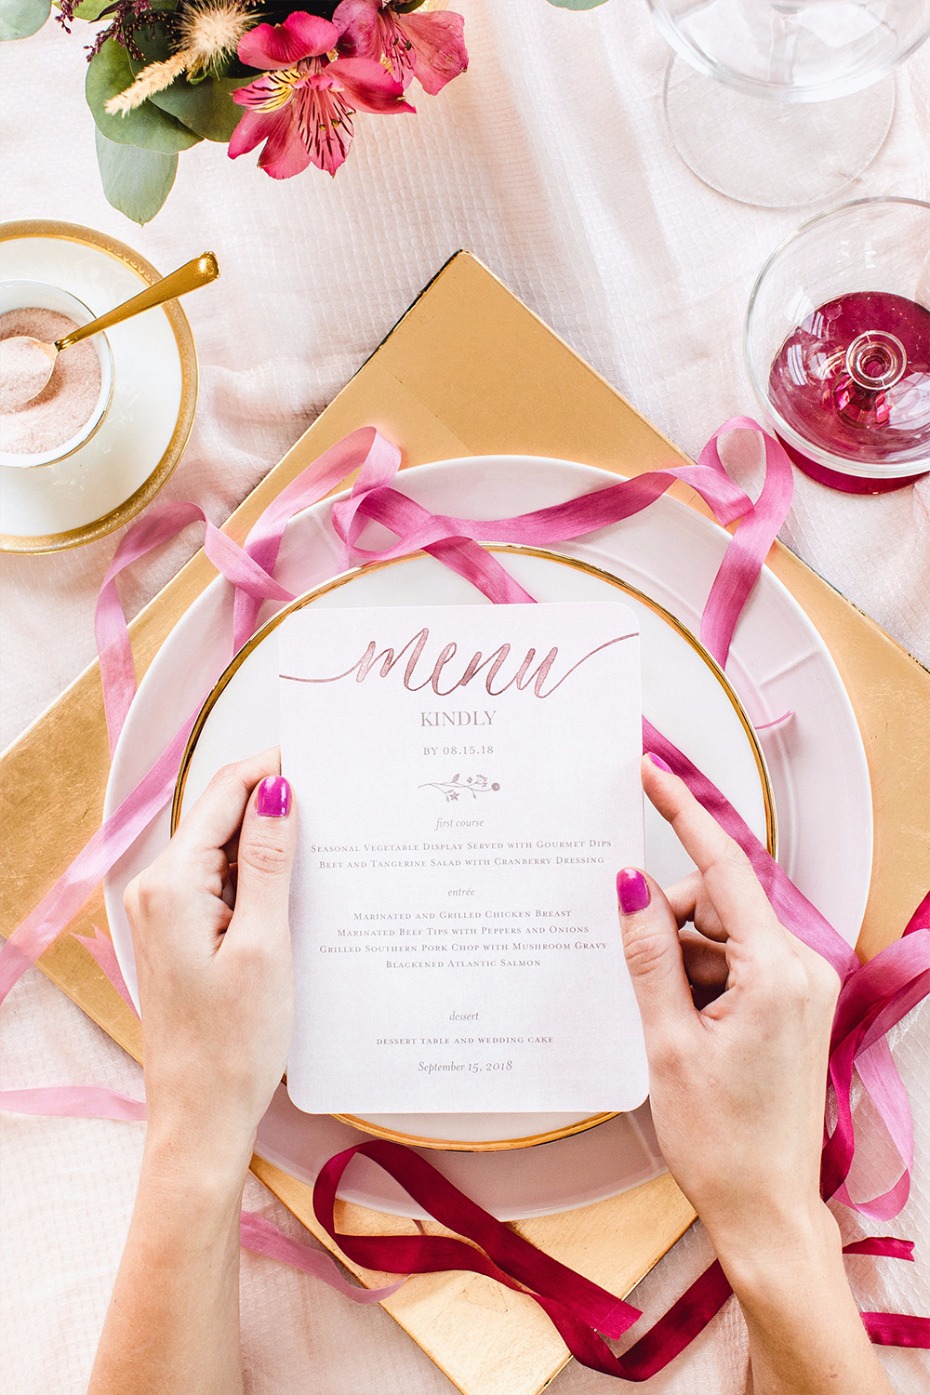 Delightful Blooms wedding menu from Shutterfly